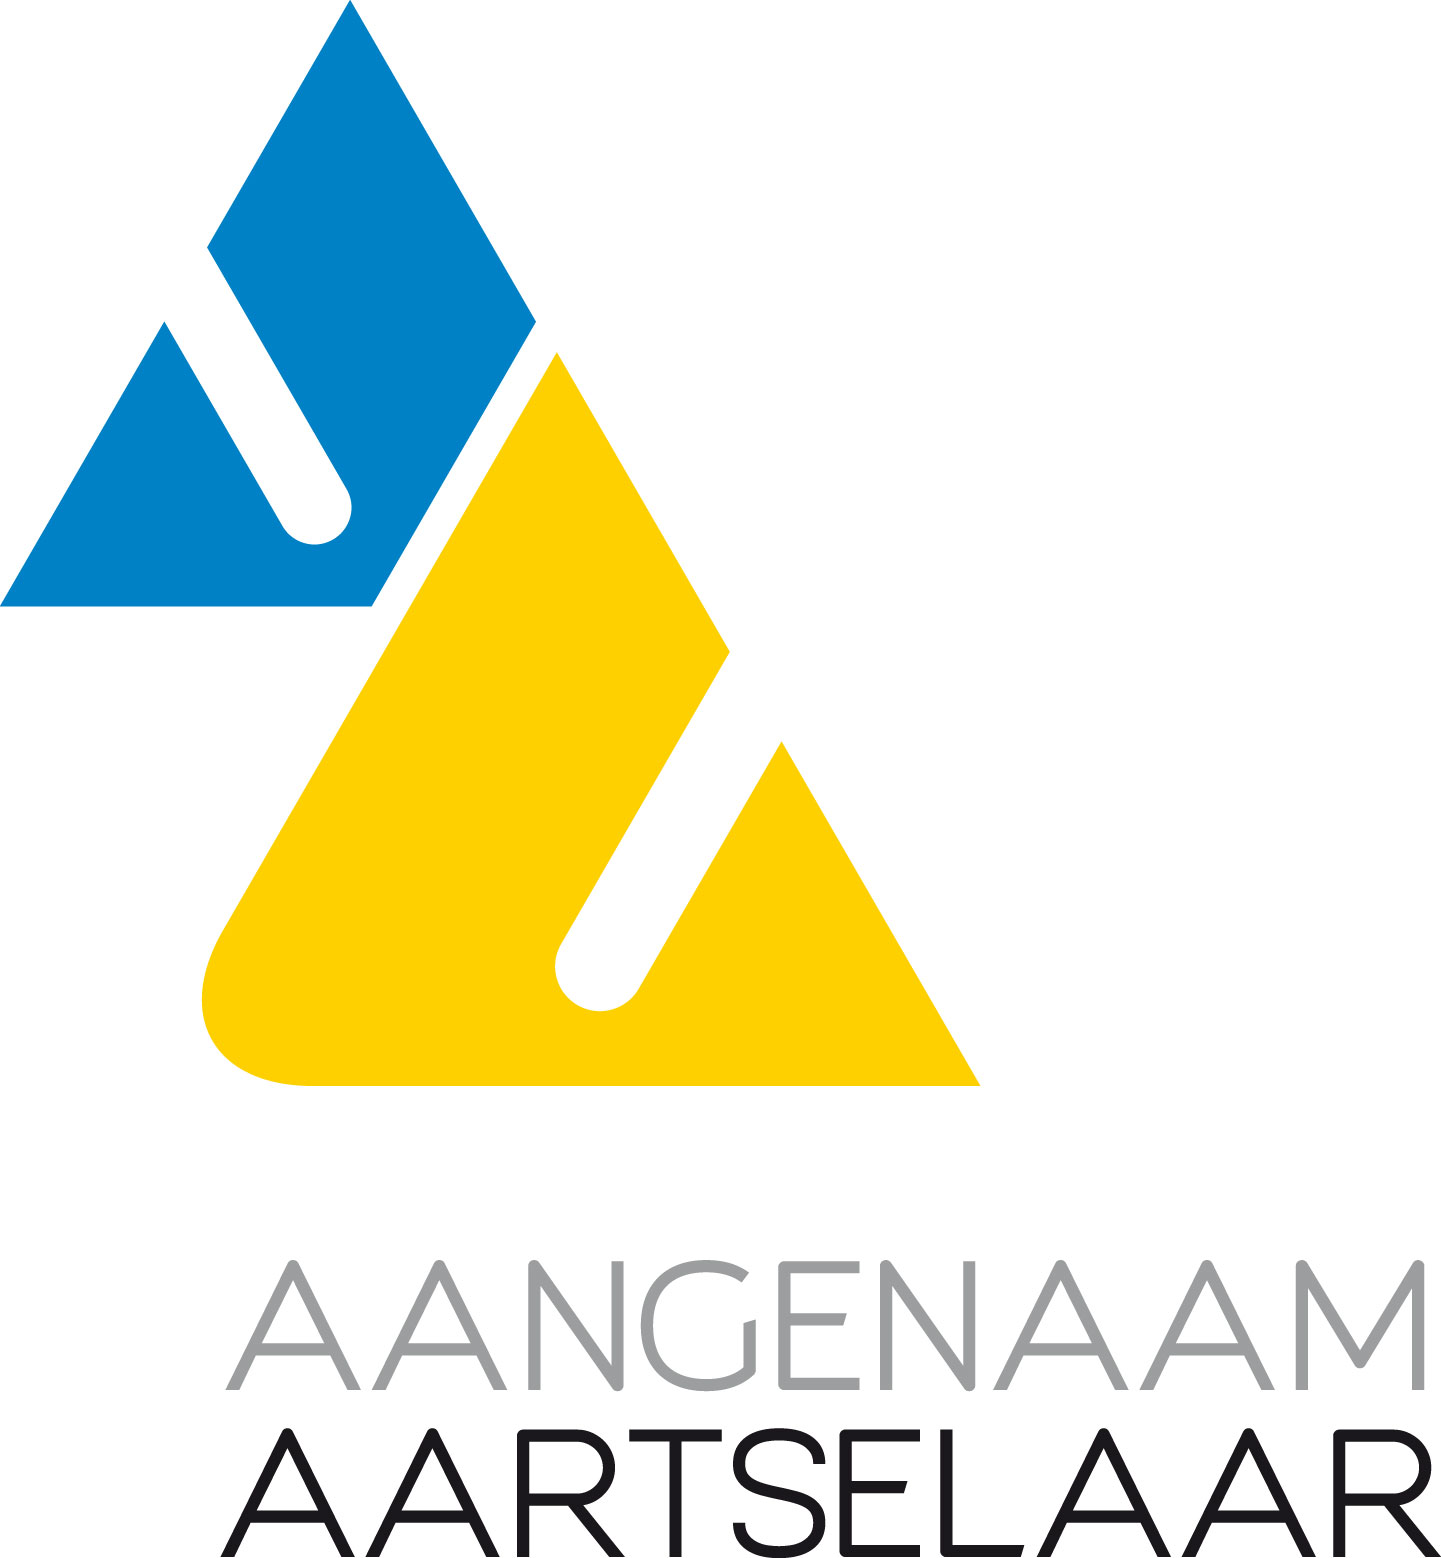 the icon logo of Gemeente Aartselaar